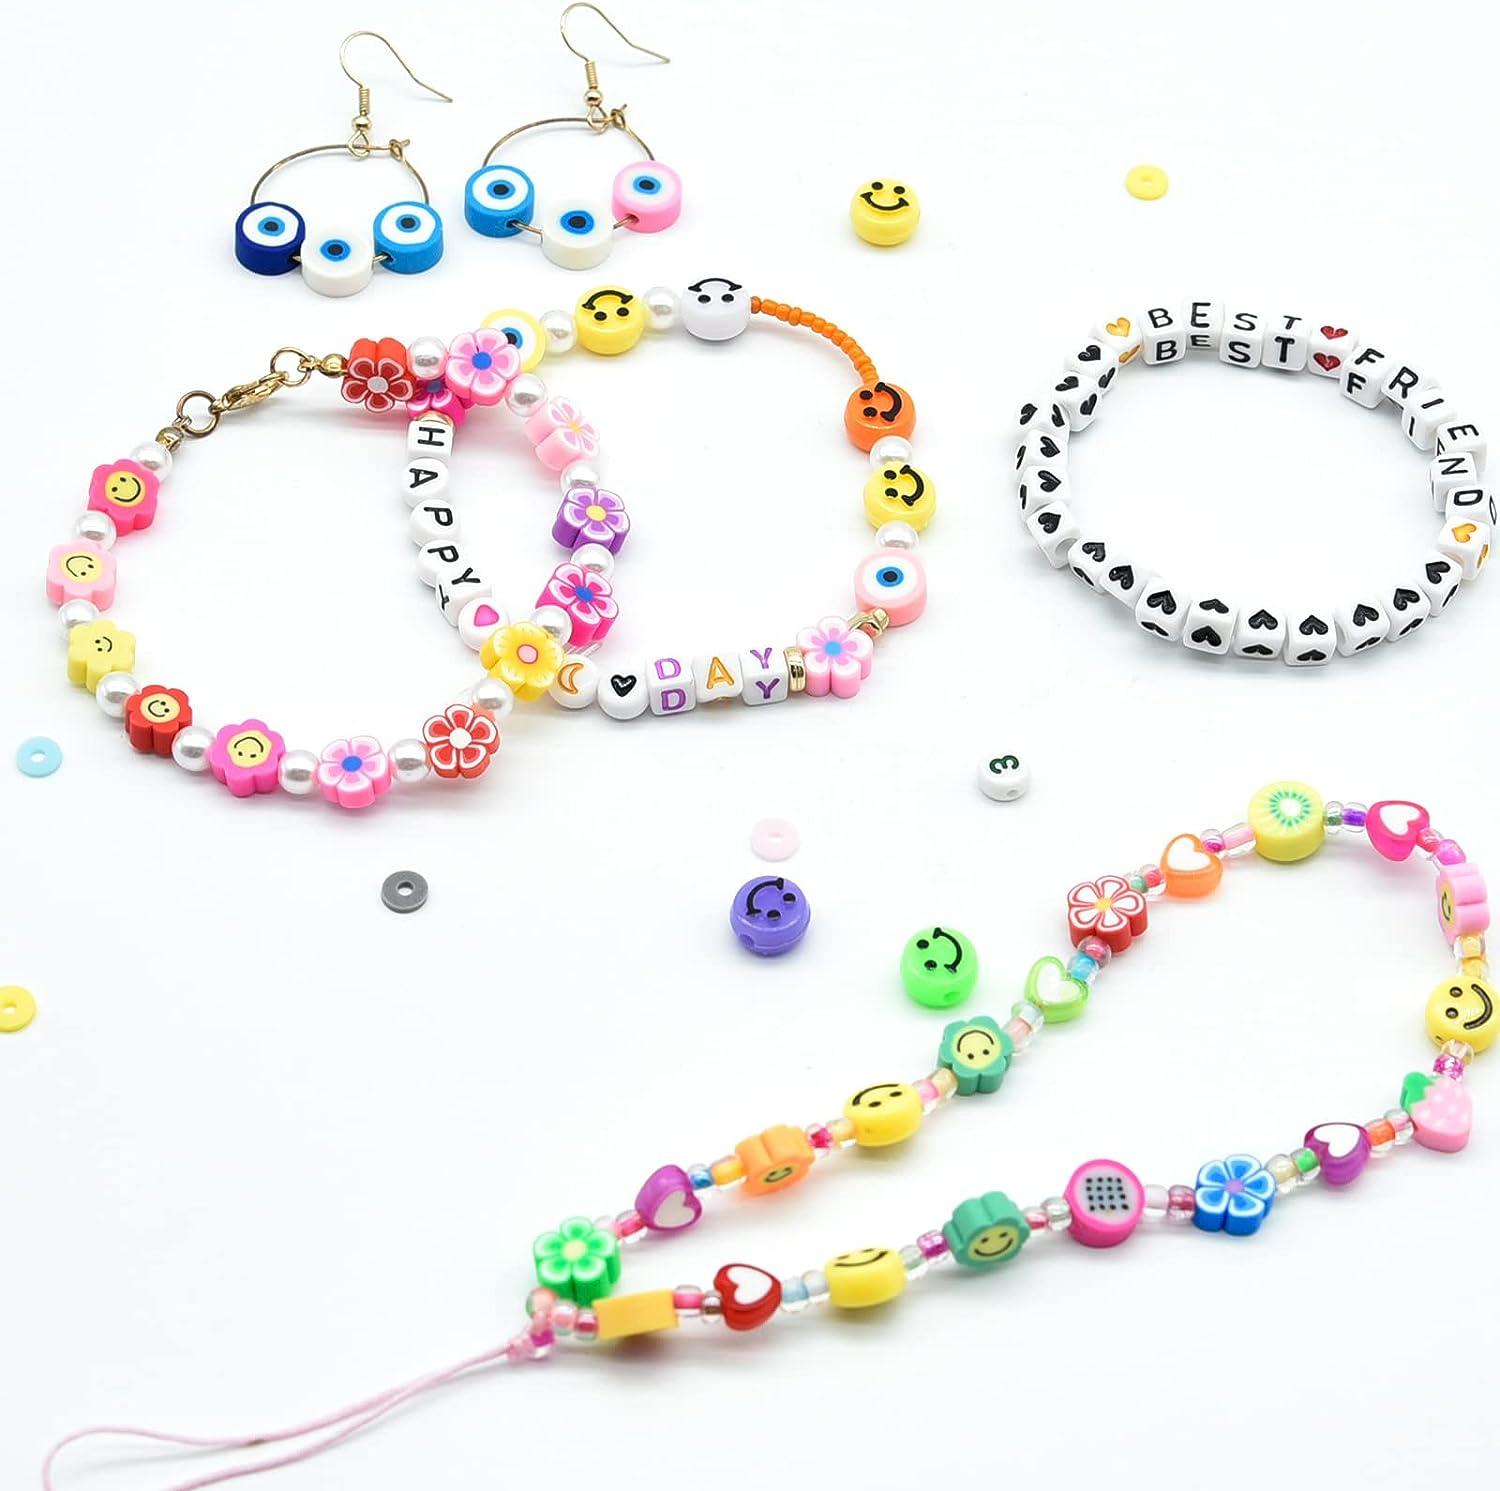 JOJANEAS 48 Colors Pony Beads Kit Bracelet Making Kit for Girls Beads for  Bracelets Making Friendship Bracelet Kit Smile Face Beads for Kids Letter